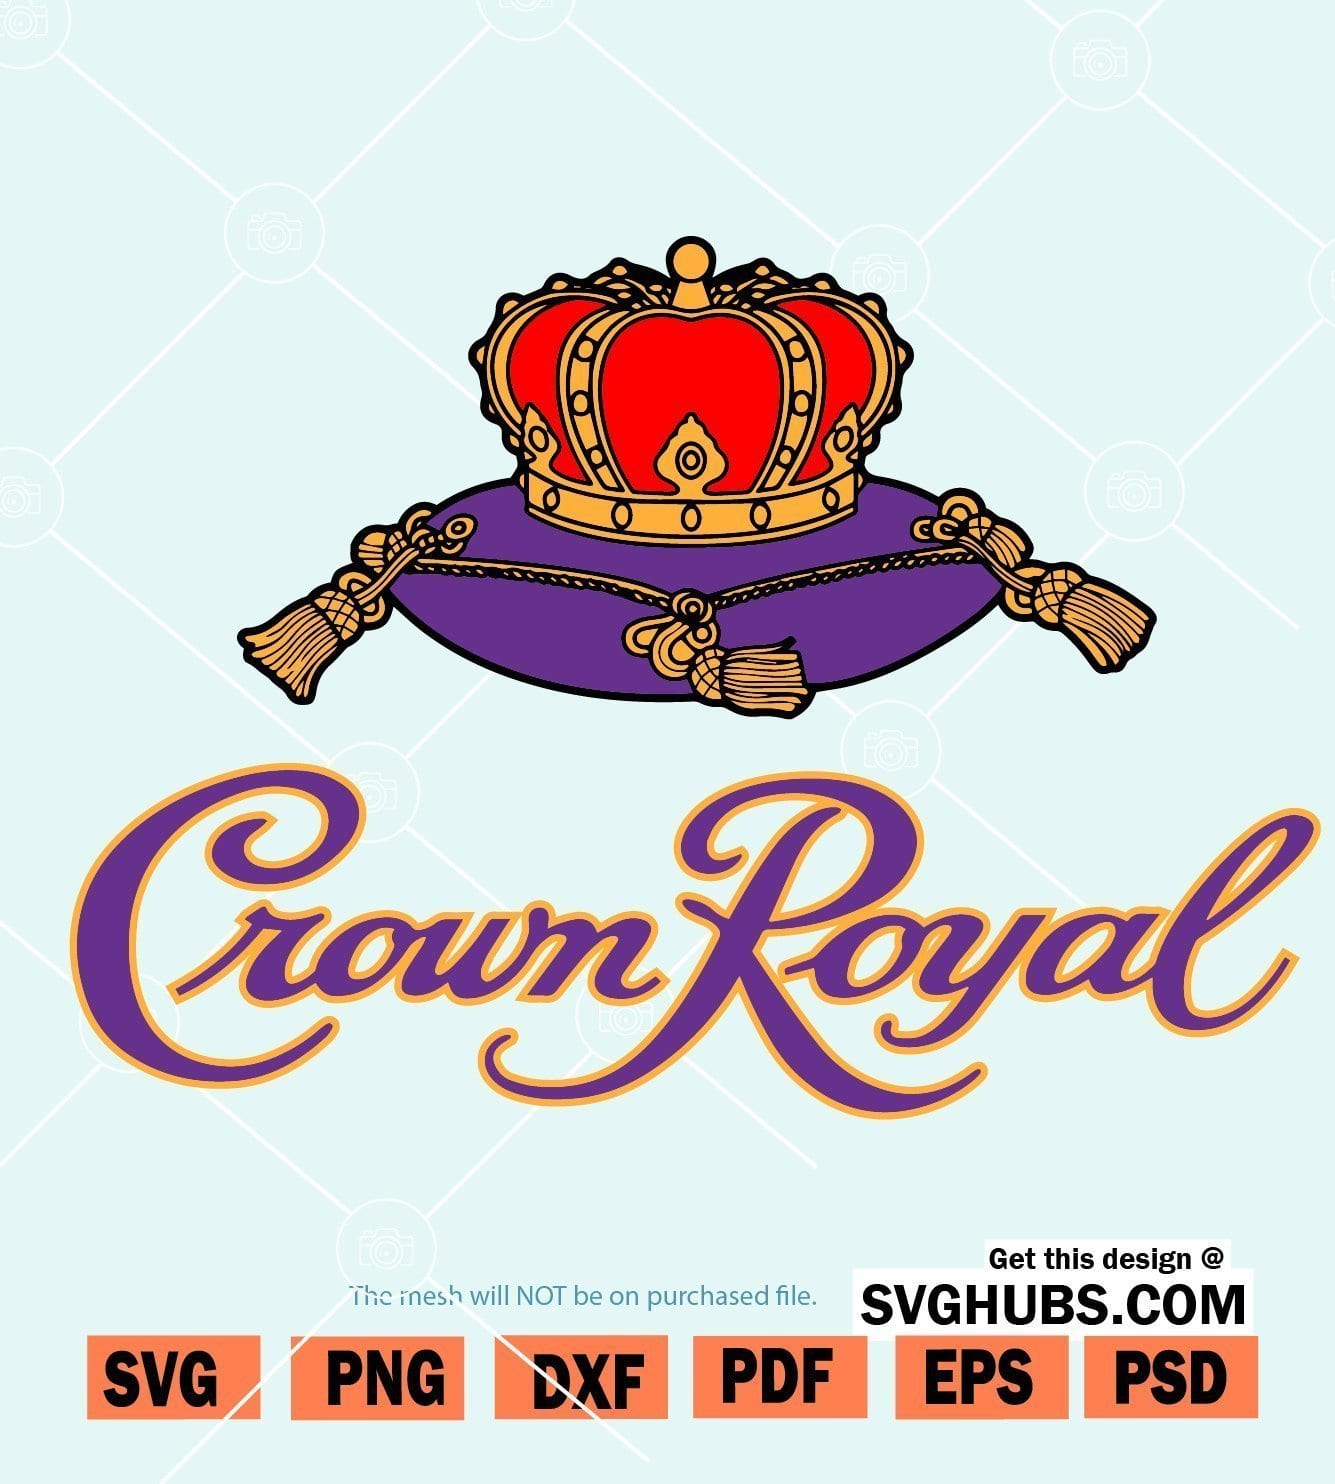 Crown Royal Svg cut file, Whisky Svg, Crown Royal label SVG - Svg Hubs